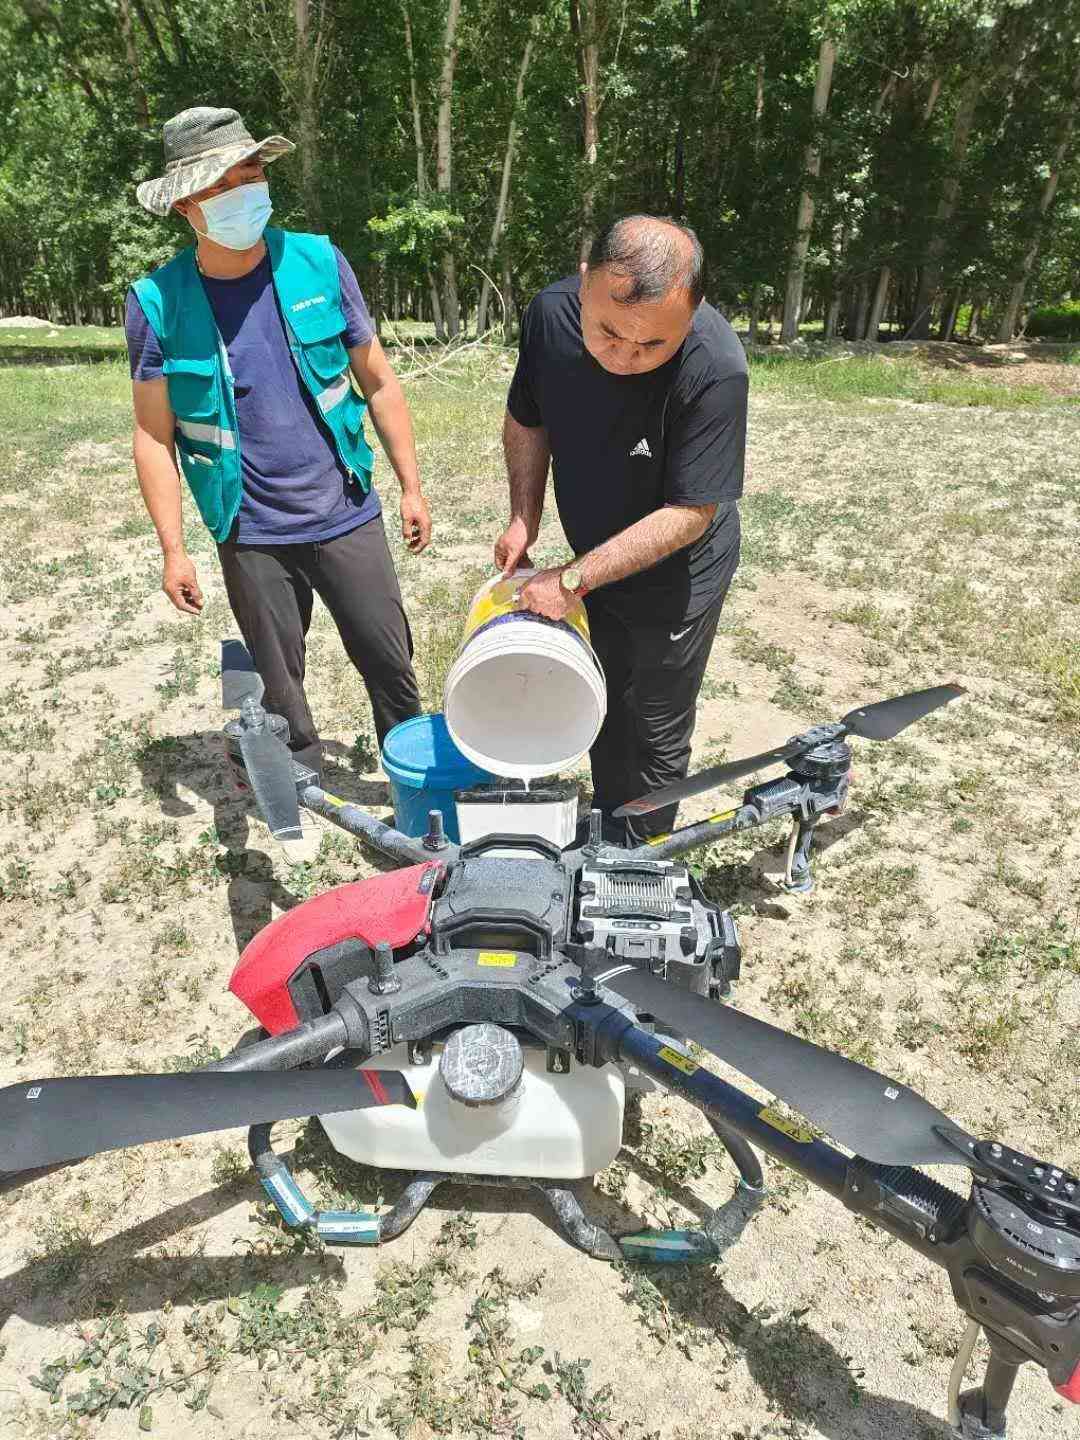 溫泉縣林業局領導親自參與作業與極飛P80農業無人機來一次“親密接觸”